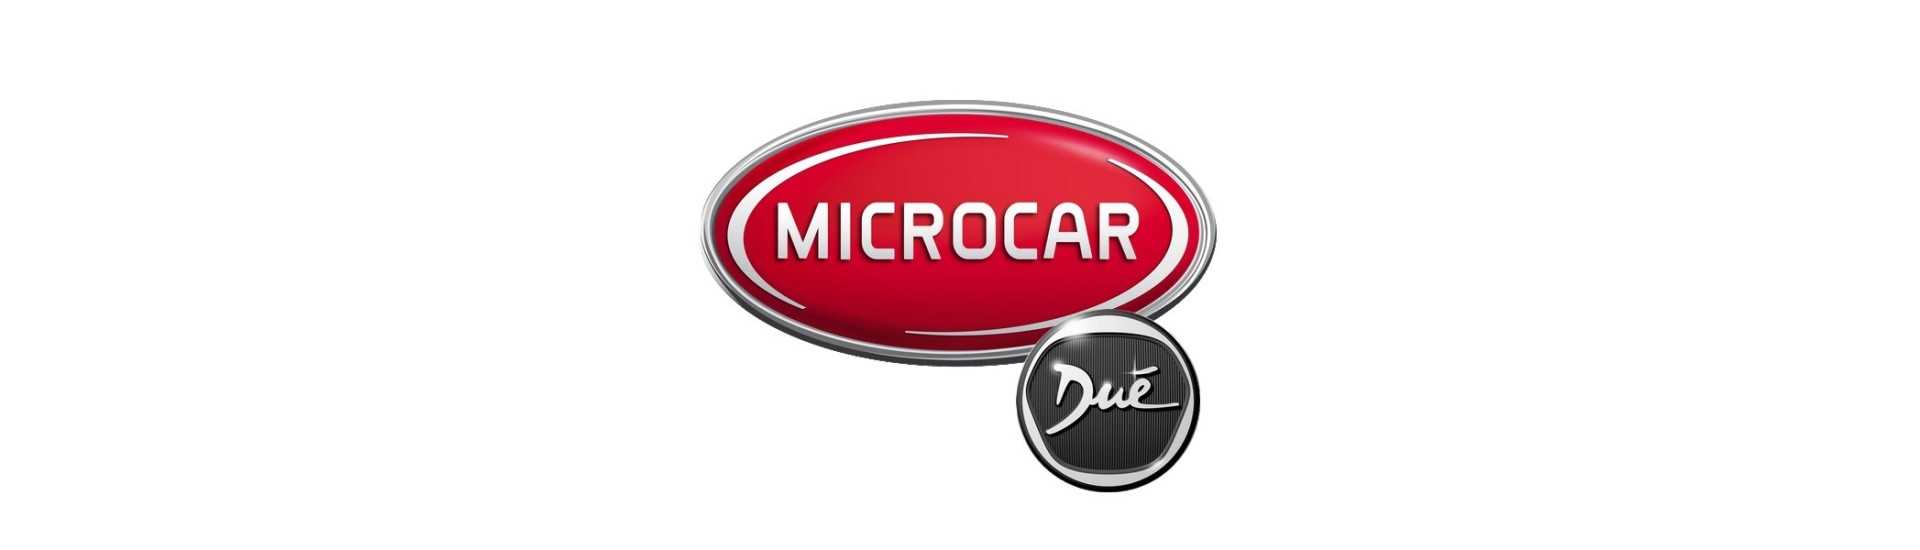 Expansion varierar till den bästa prisbilen utan licens Microcar Dué